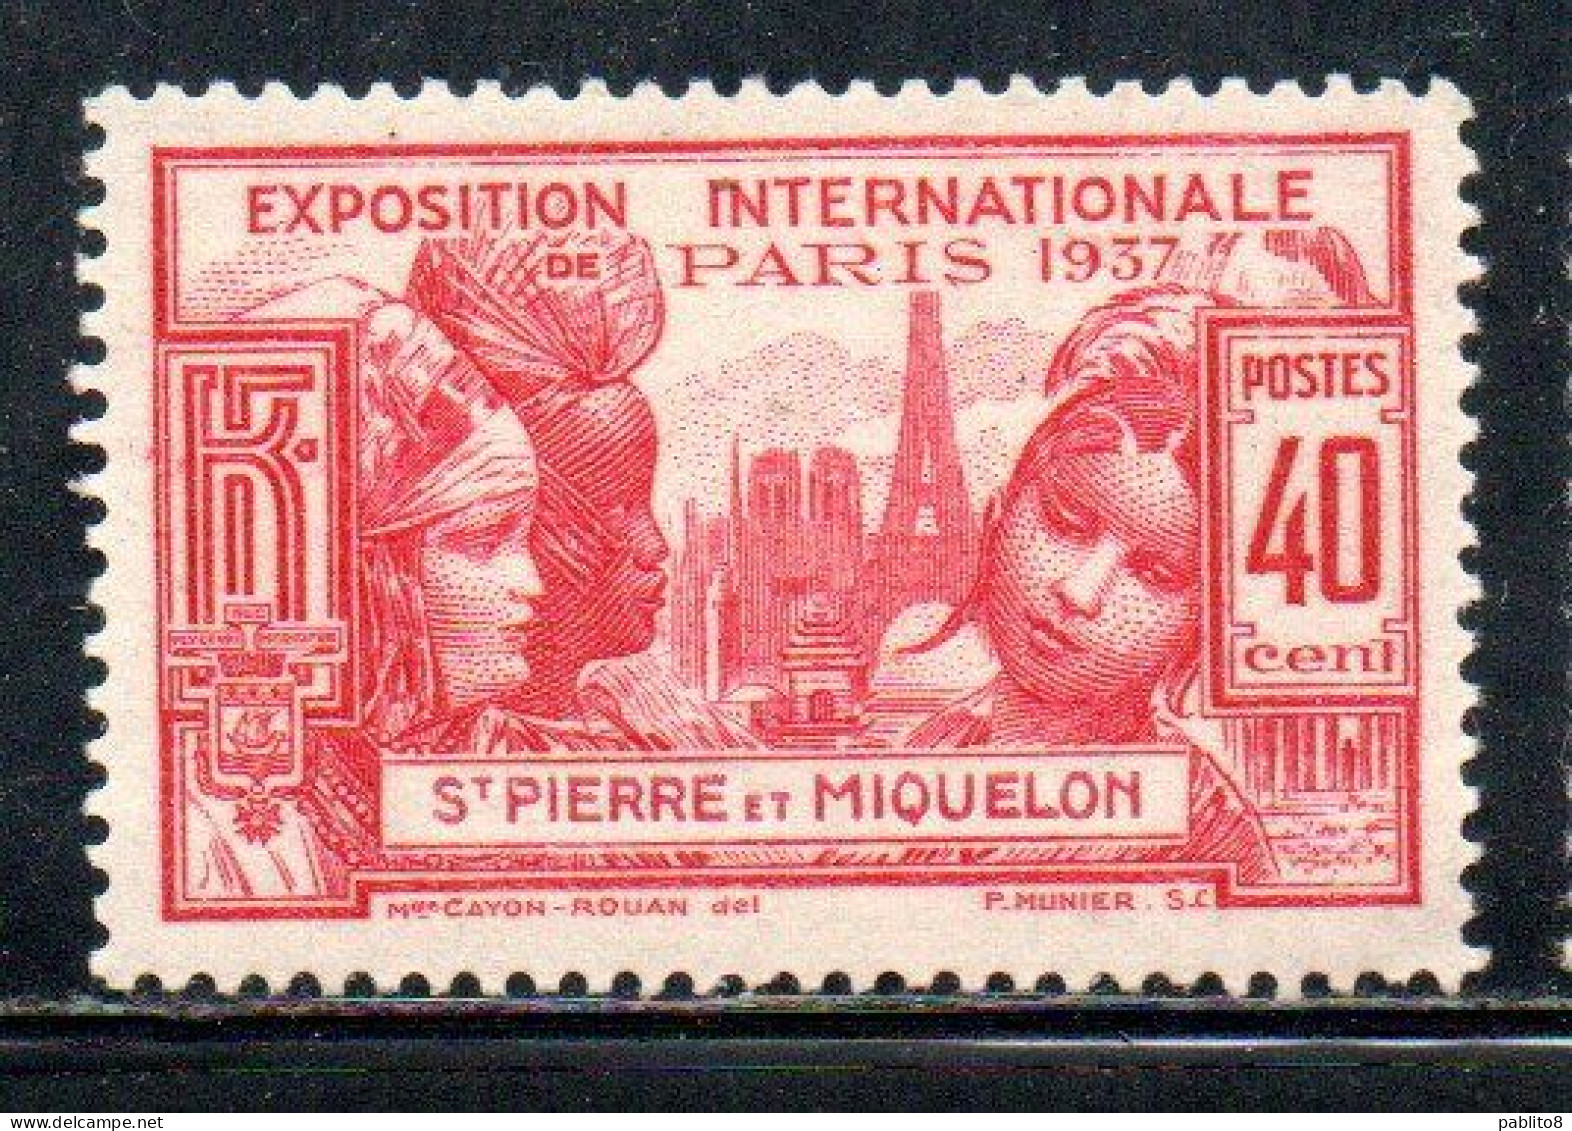 ST. SAINT PIERRE AND ET MIQUELON 1937 PARIS INTERNATIONAL EXPOSITION ISSUE 40c MLH - Neufs